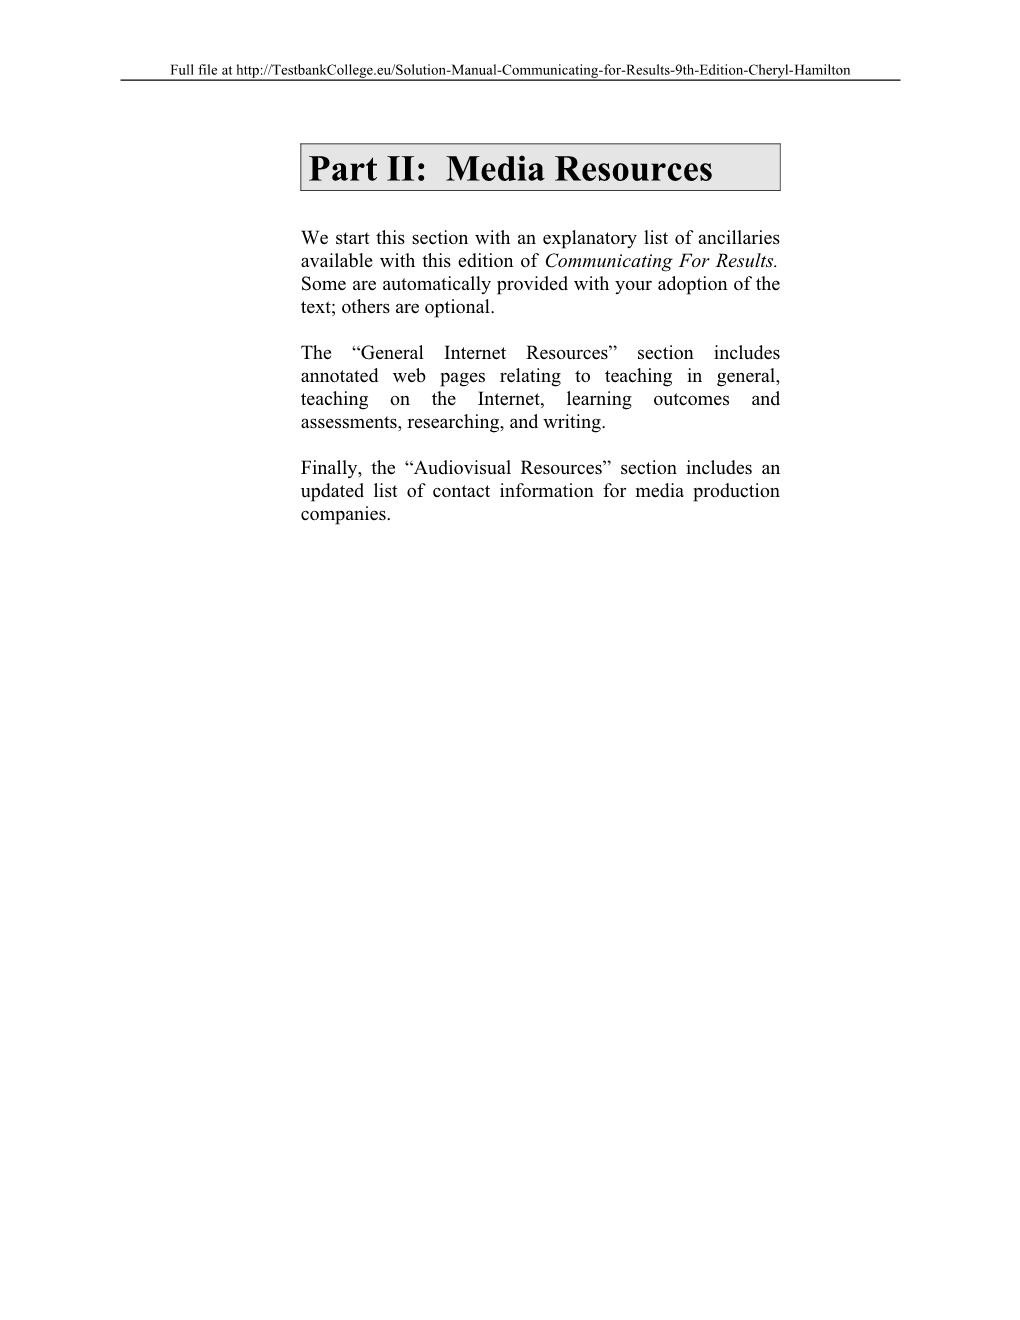 Part II: Media Resources